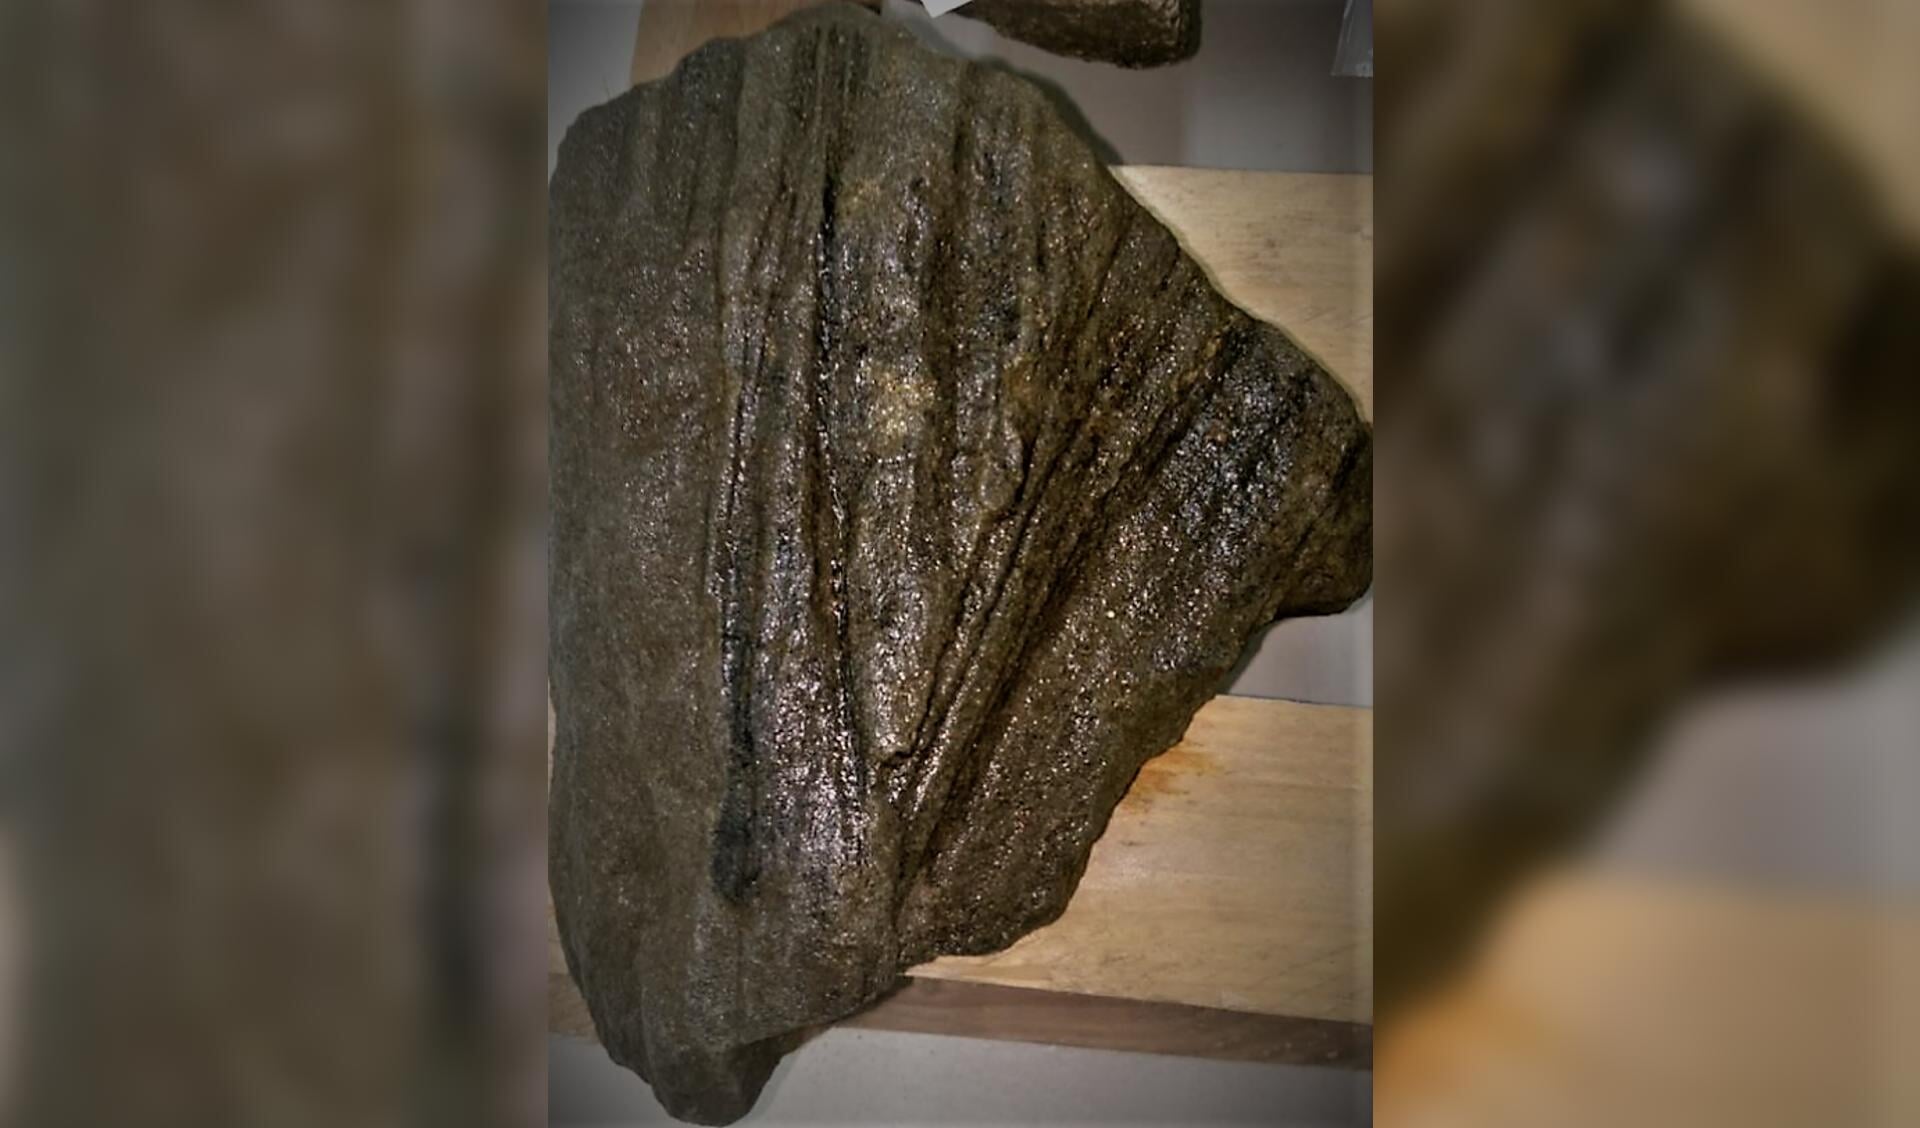 Deze steen die naar boven is gehaald is waarschijnlijk een fragment van een Romeins beeldhouwwerk. 